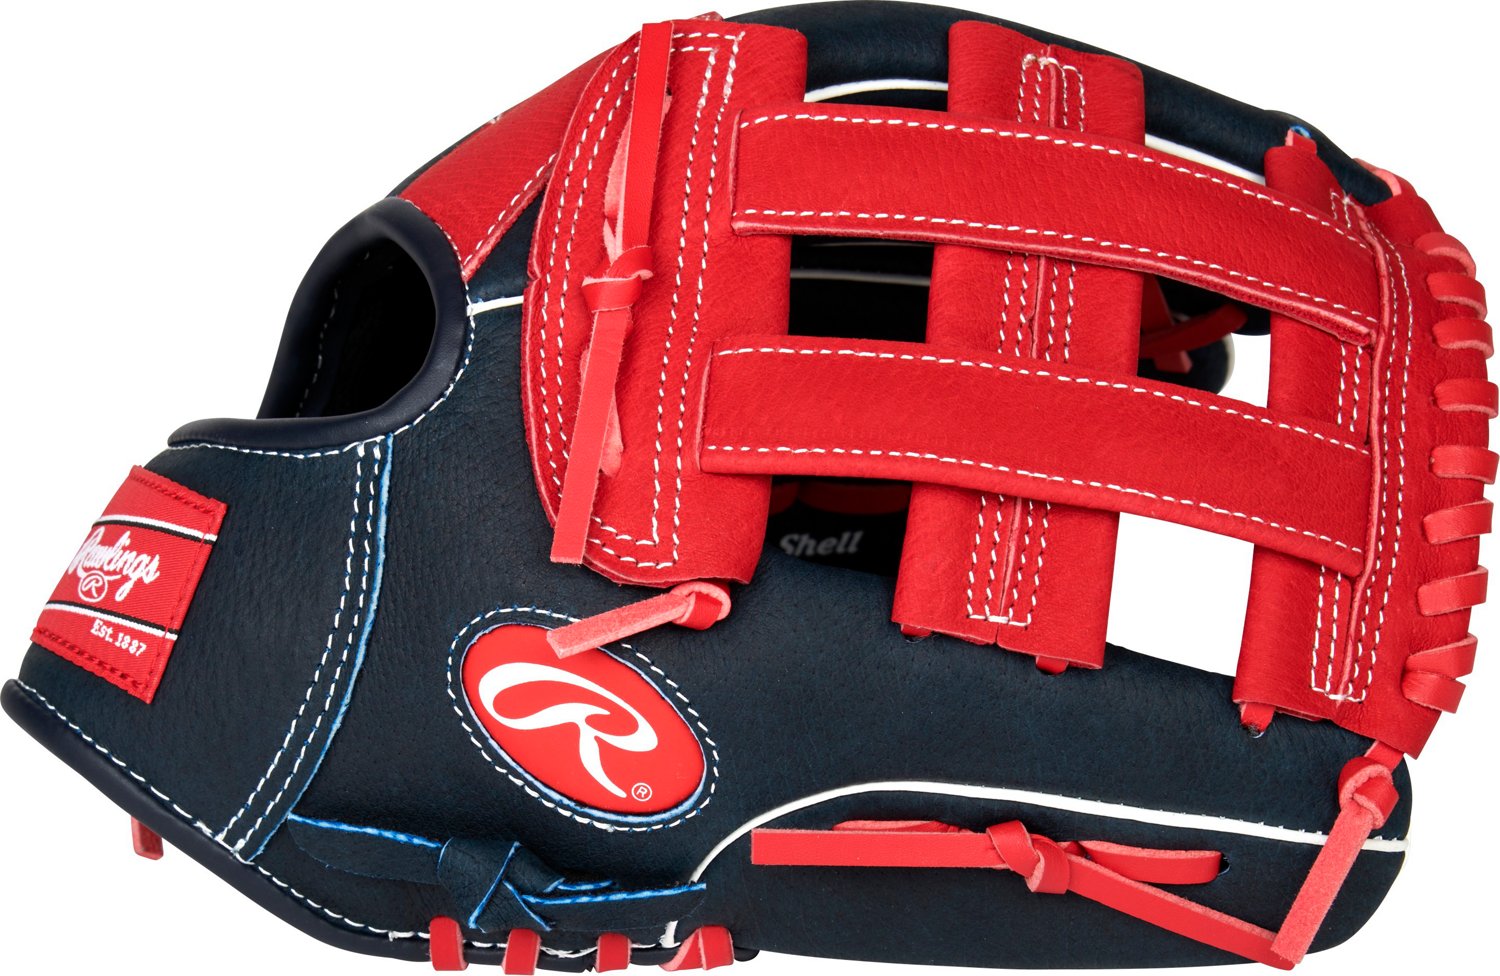 Rawlings Select Pro Lite 11.5 Ronald Acuna Youth Baseball Glove